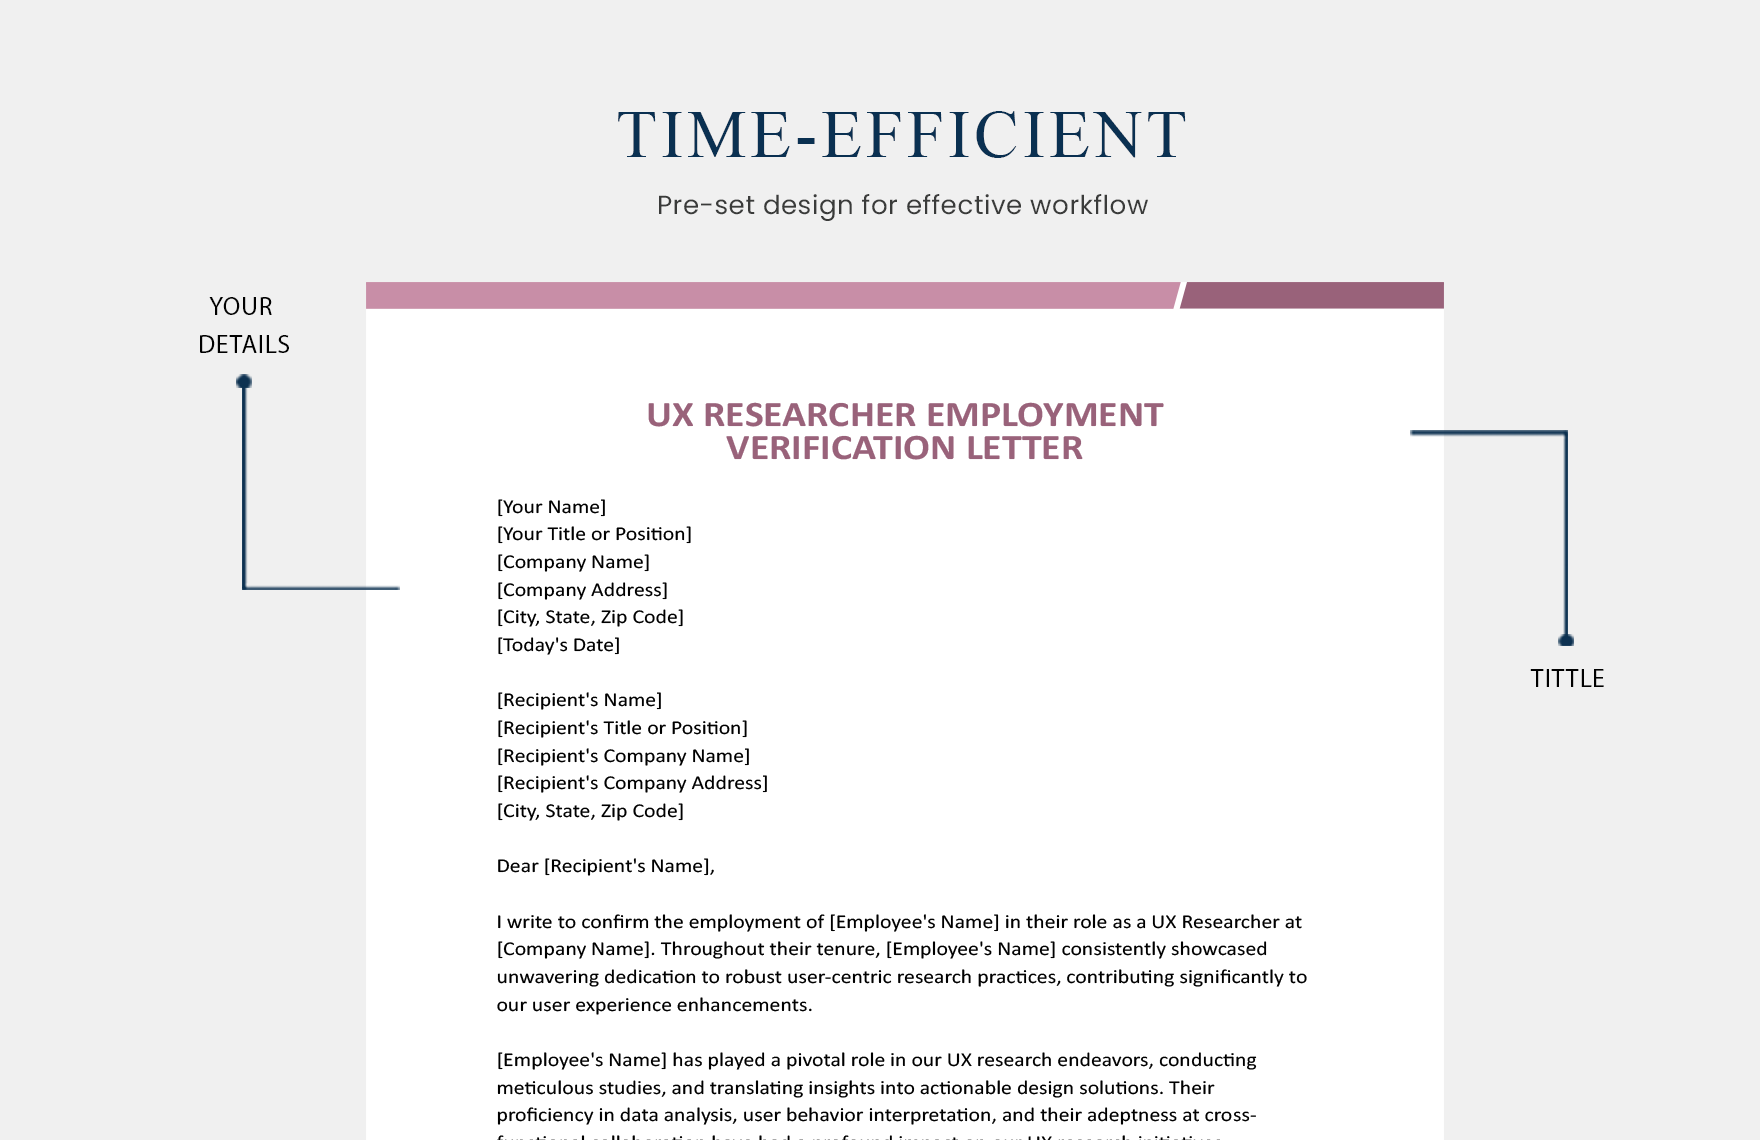 UX Researcher Employment Verification Letter